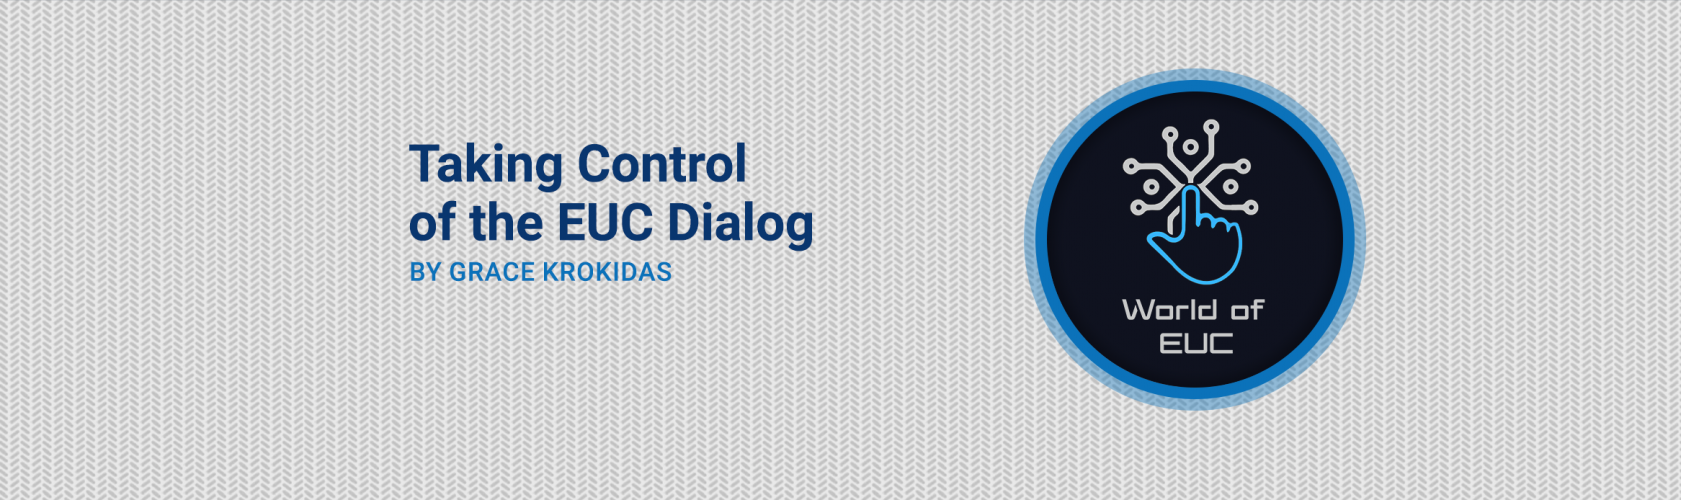 Blog - Taking Control of the EUC Dialog